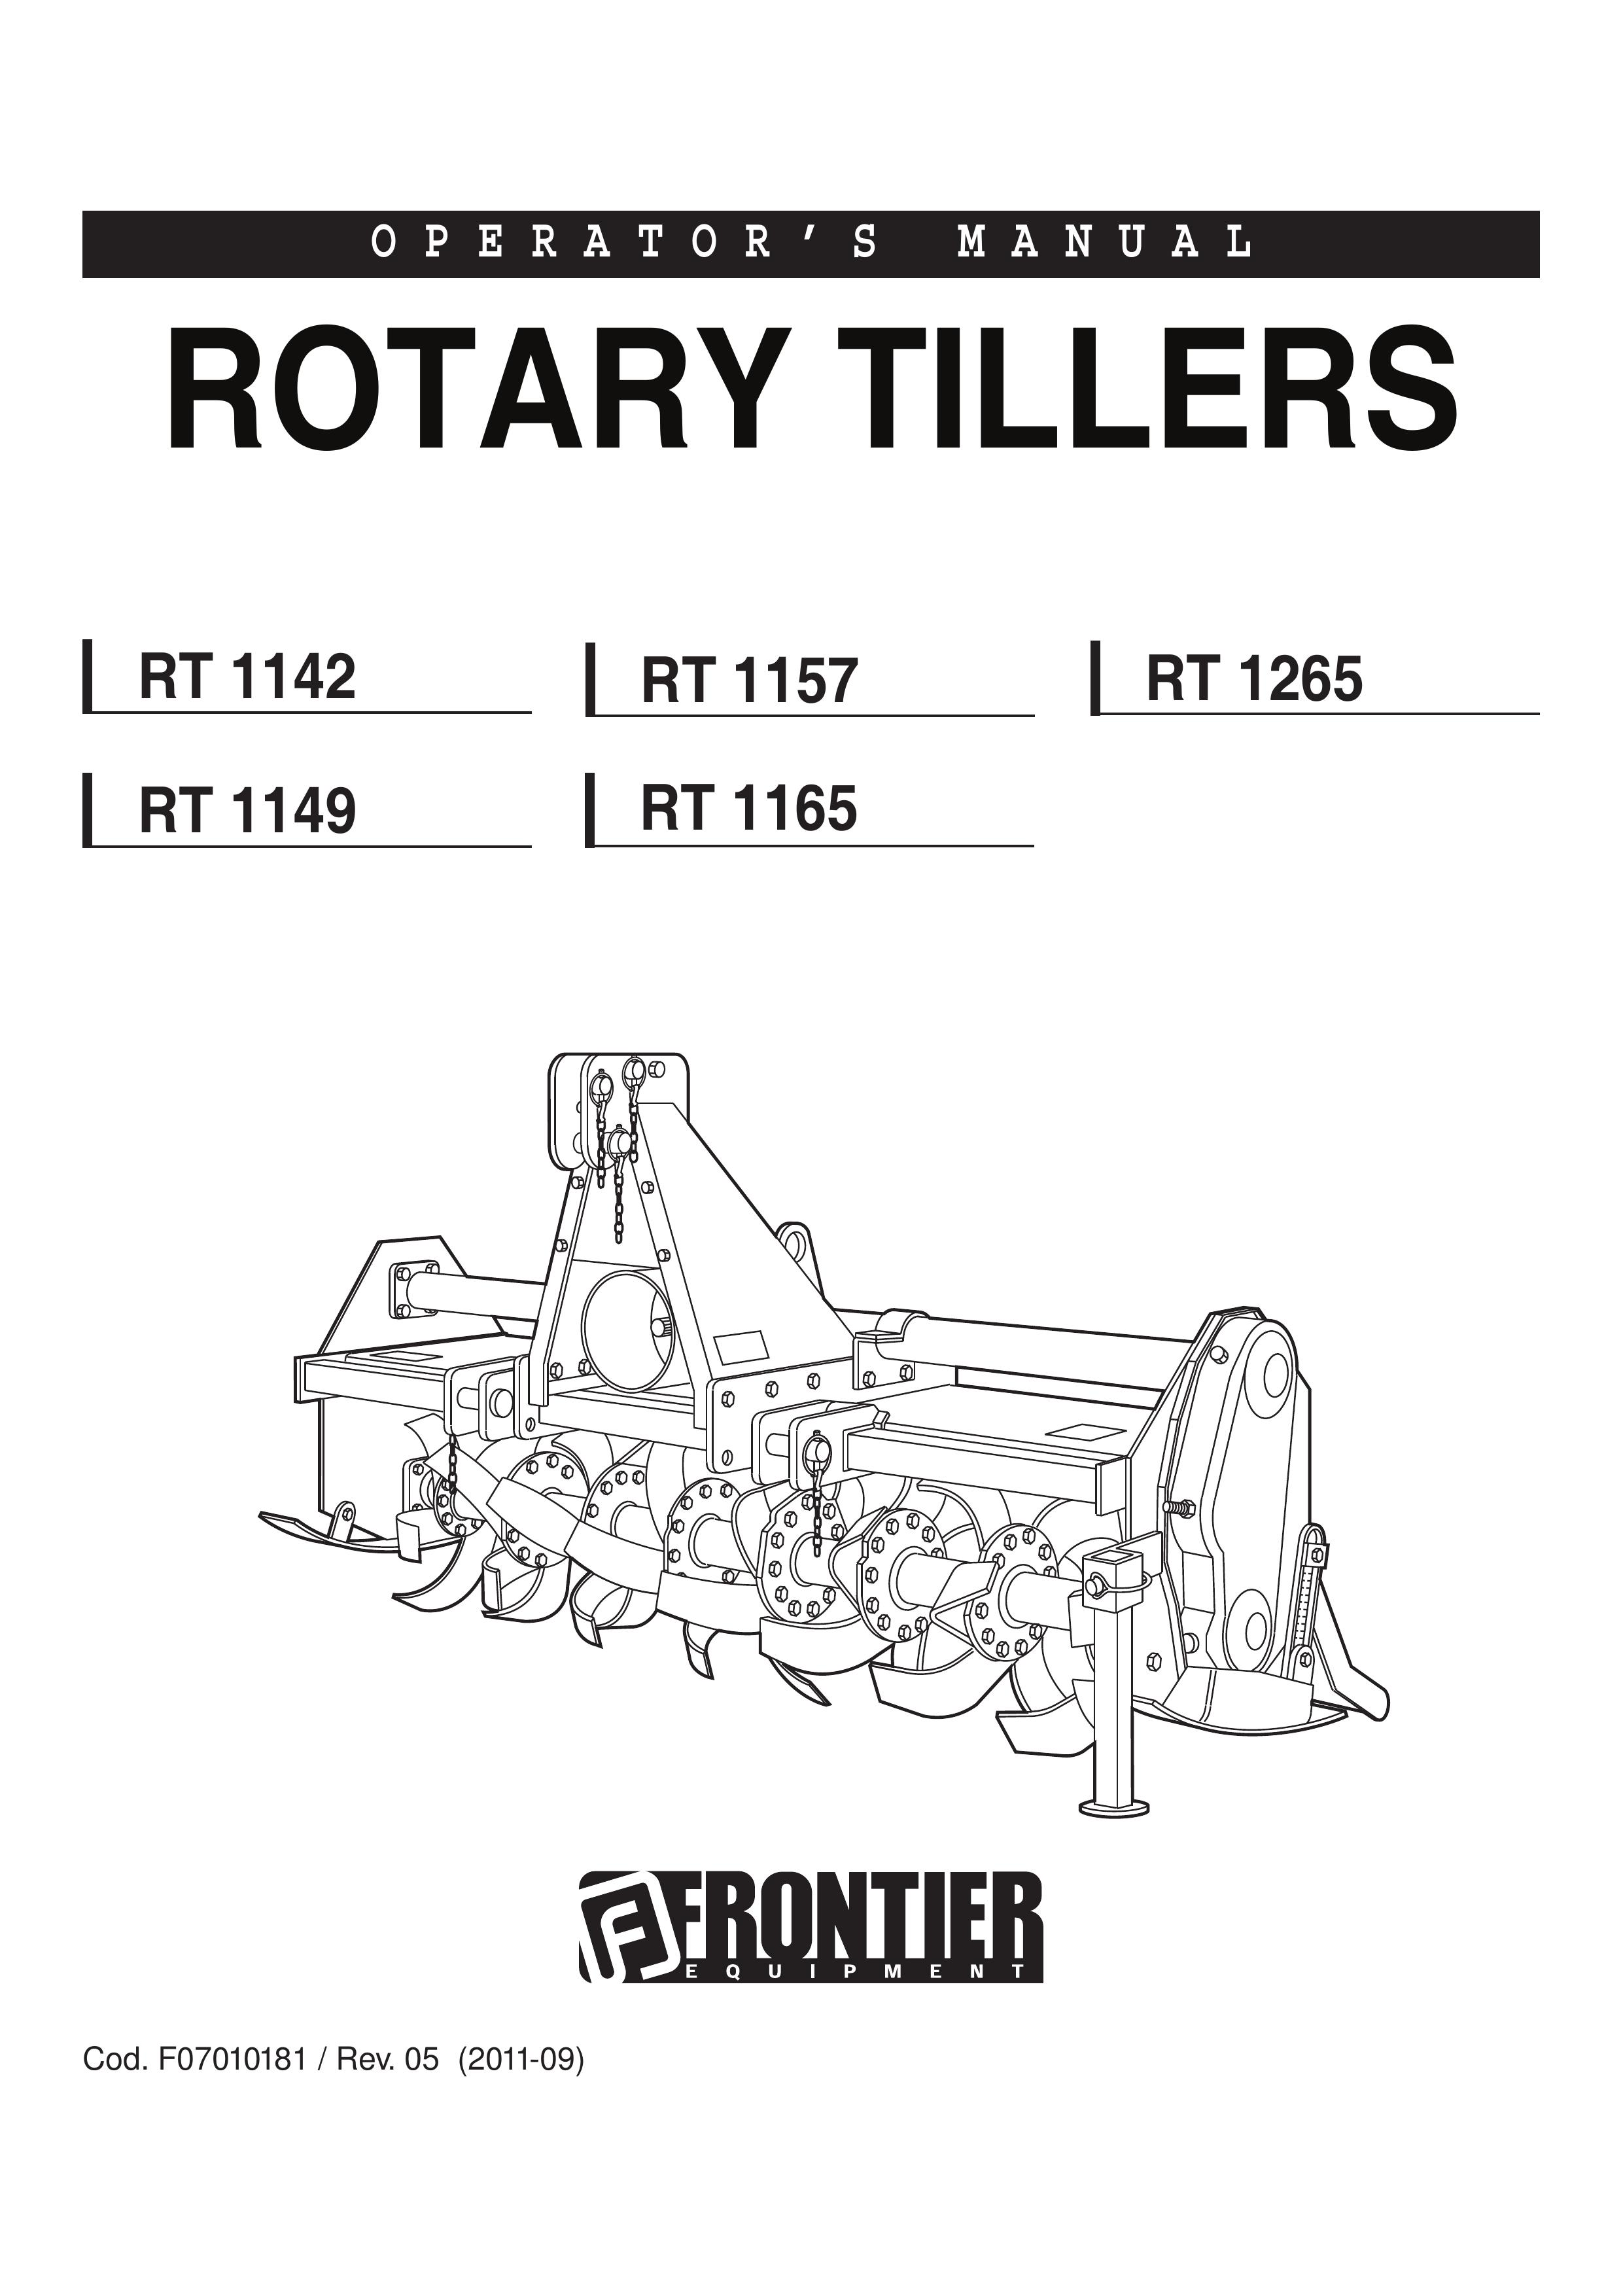 John Deere RT 1165 Tiller User Manual